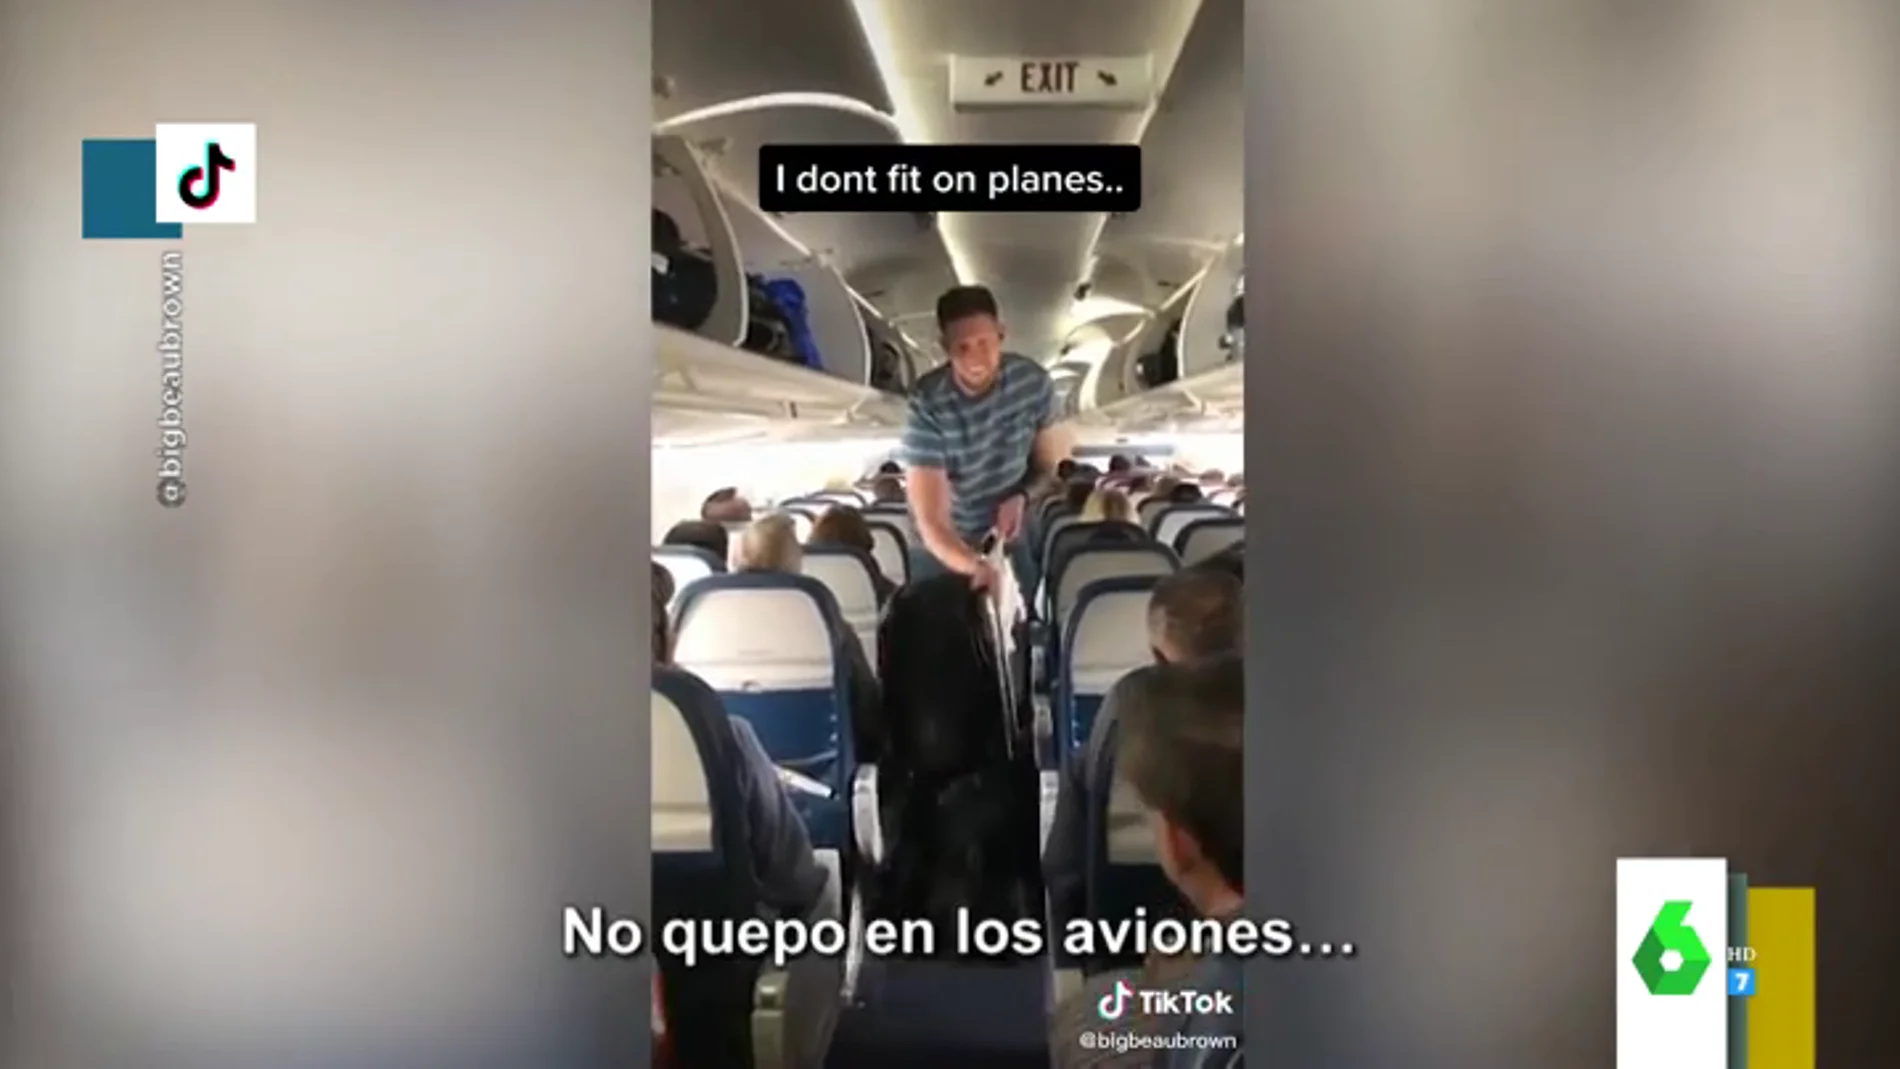 El mal rato de un chico de dos metros al volar en 'low-cost': "No quepo en los aviones"